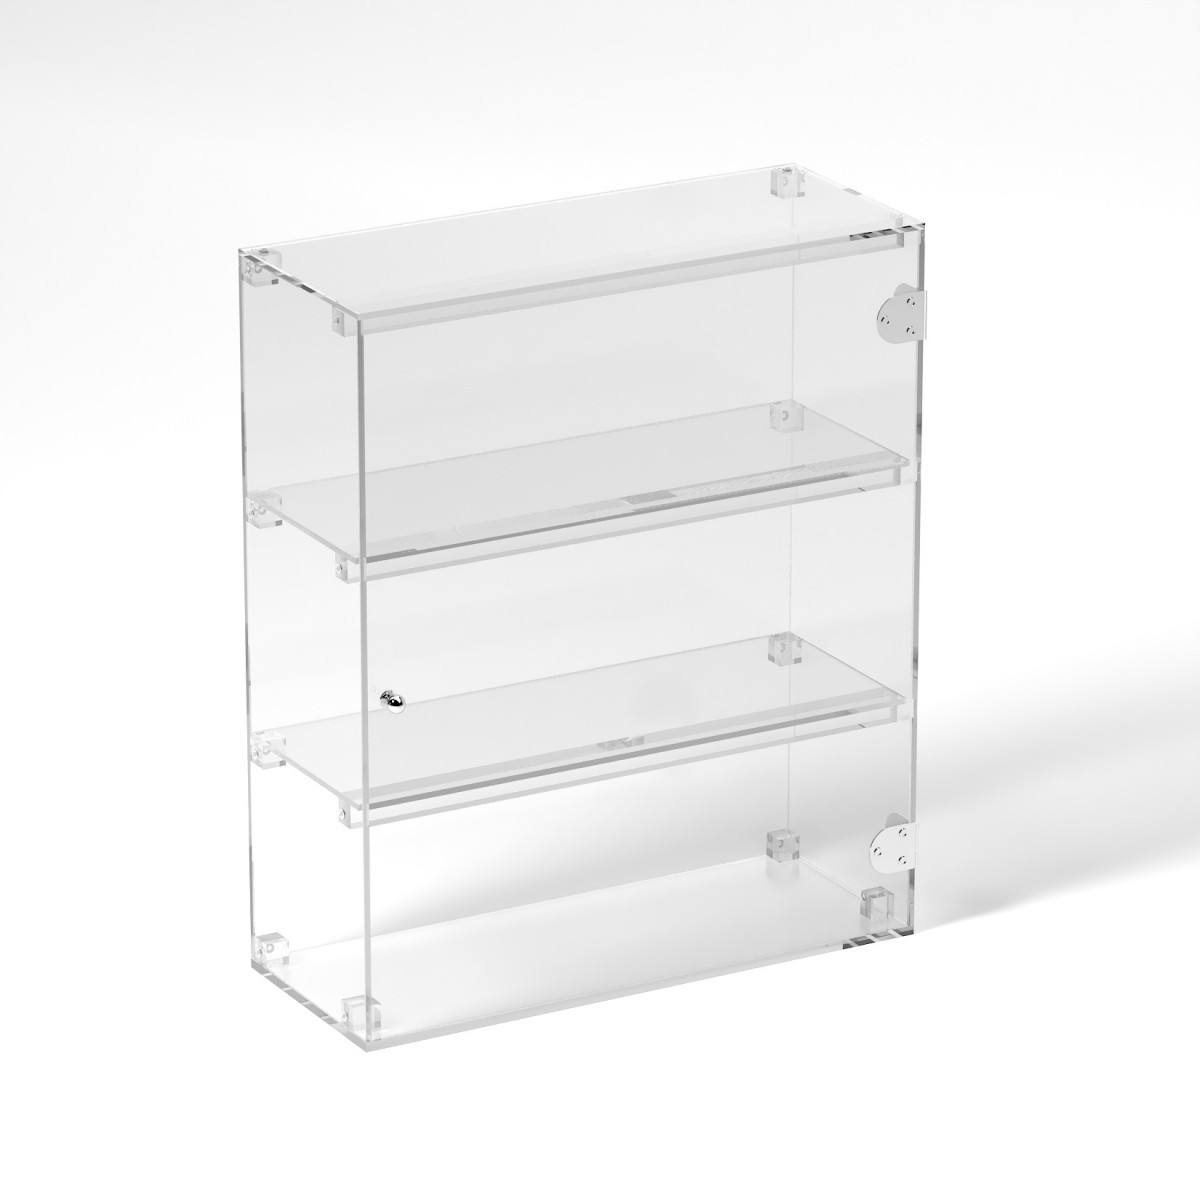 E-808 VET - Ampia vetrina espositiva in plexiglass trasparente a 3 ripiani - Misure: 50 x 20 x h60 cm